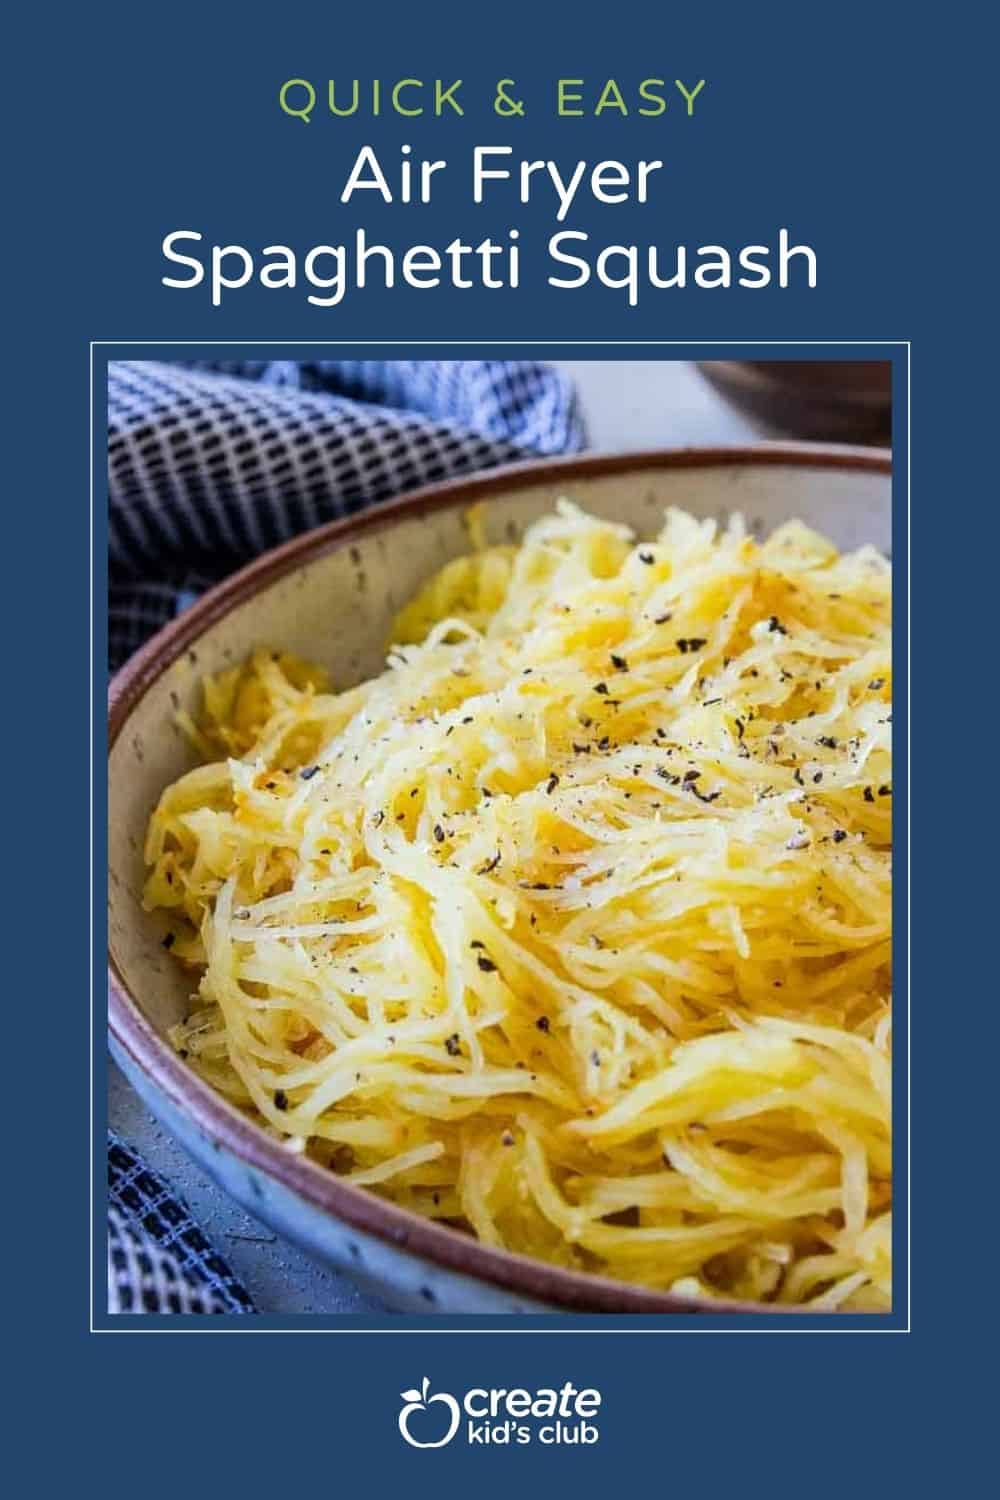 pin of air fryer spaghetti squash